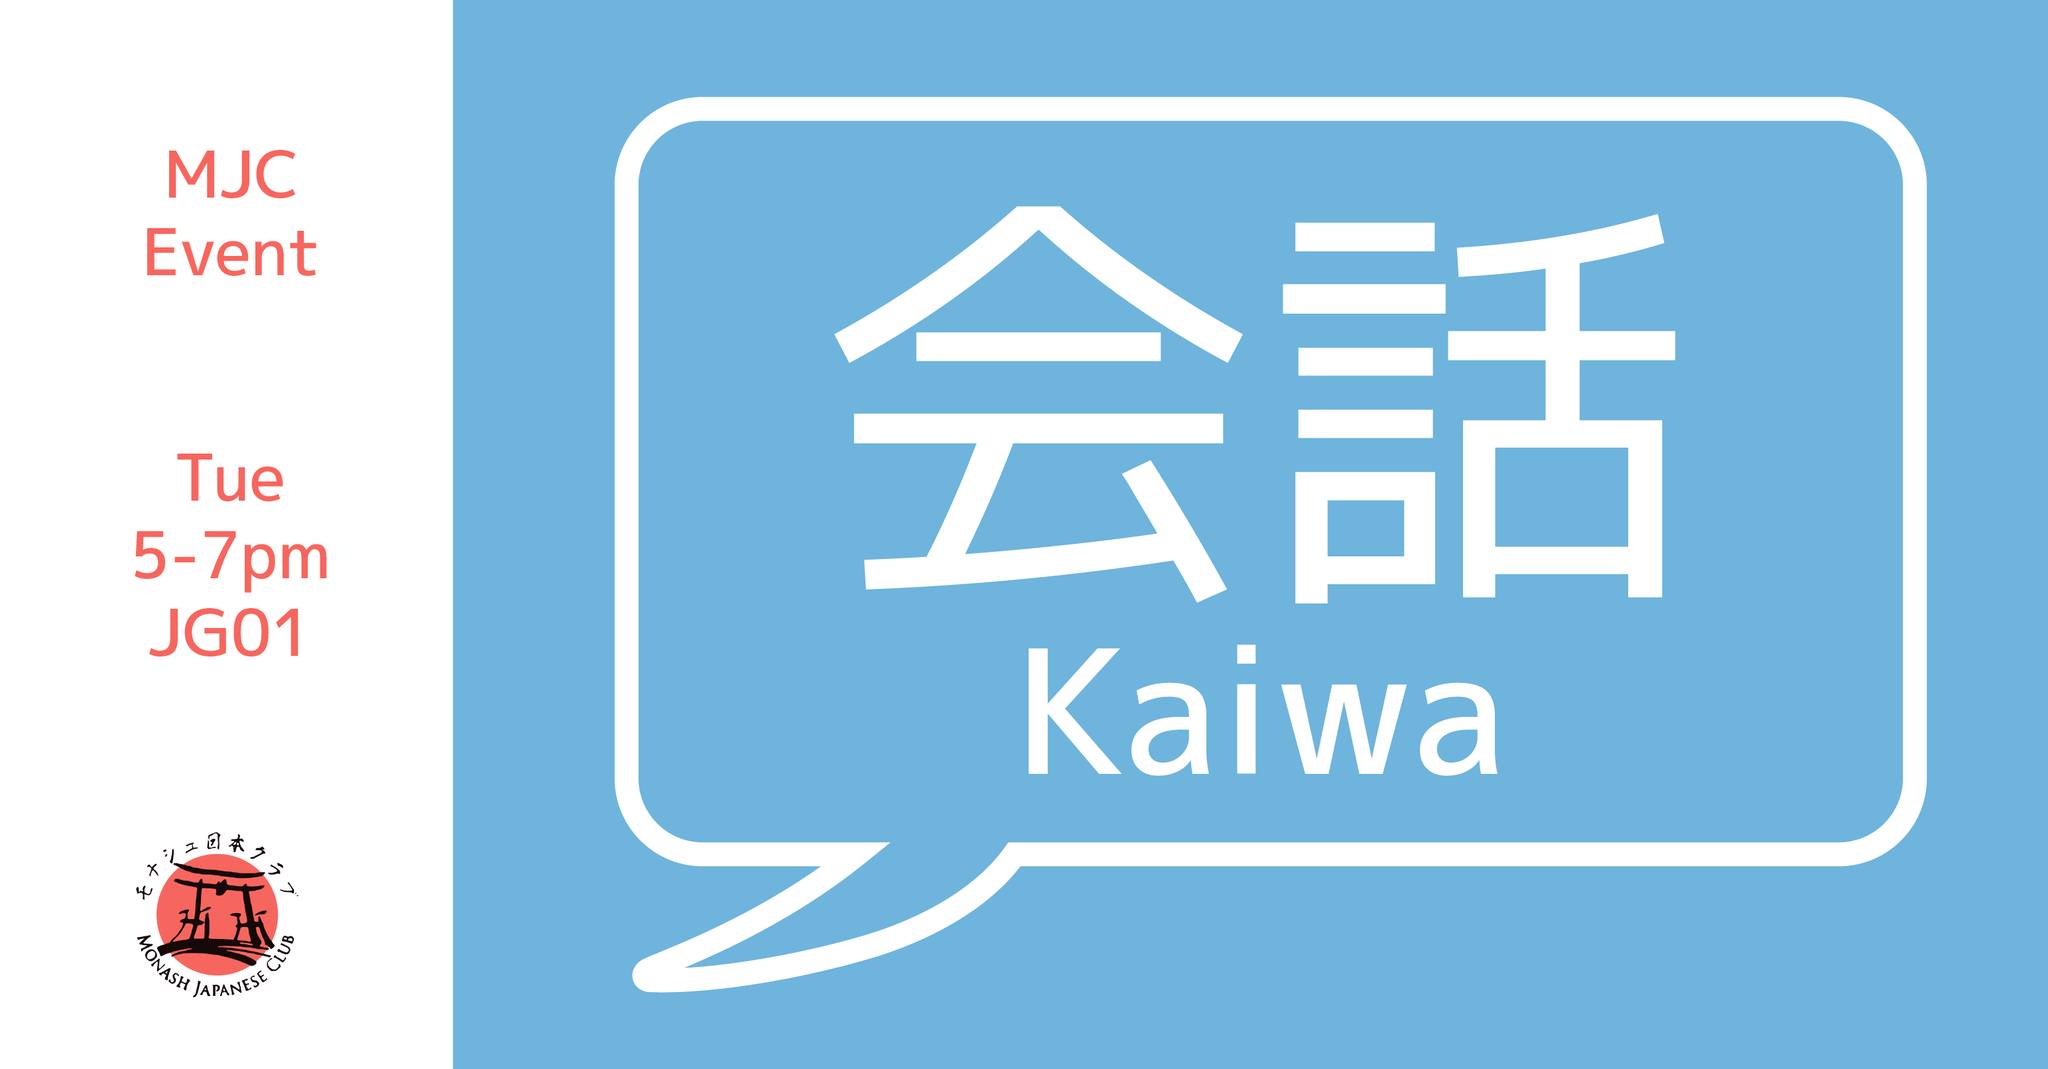 Week 2 On-campus Kaiwa banner